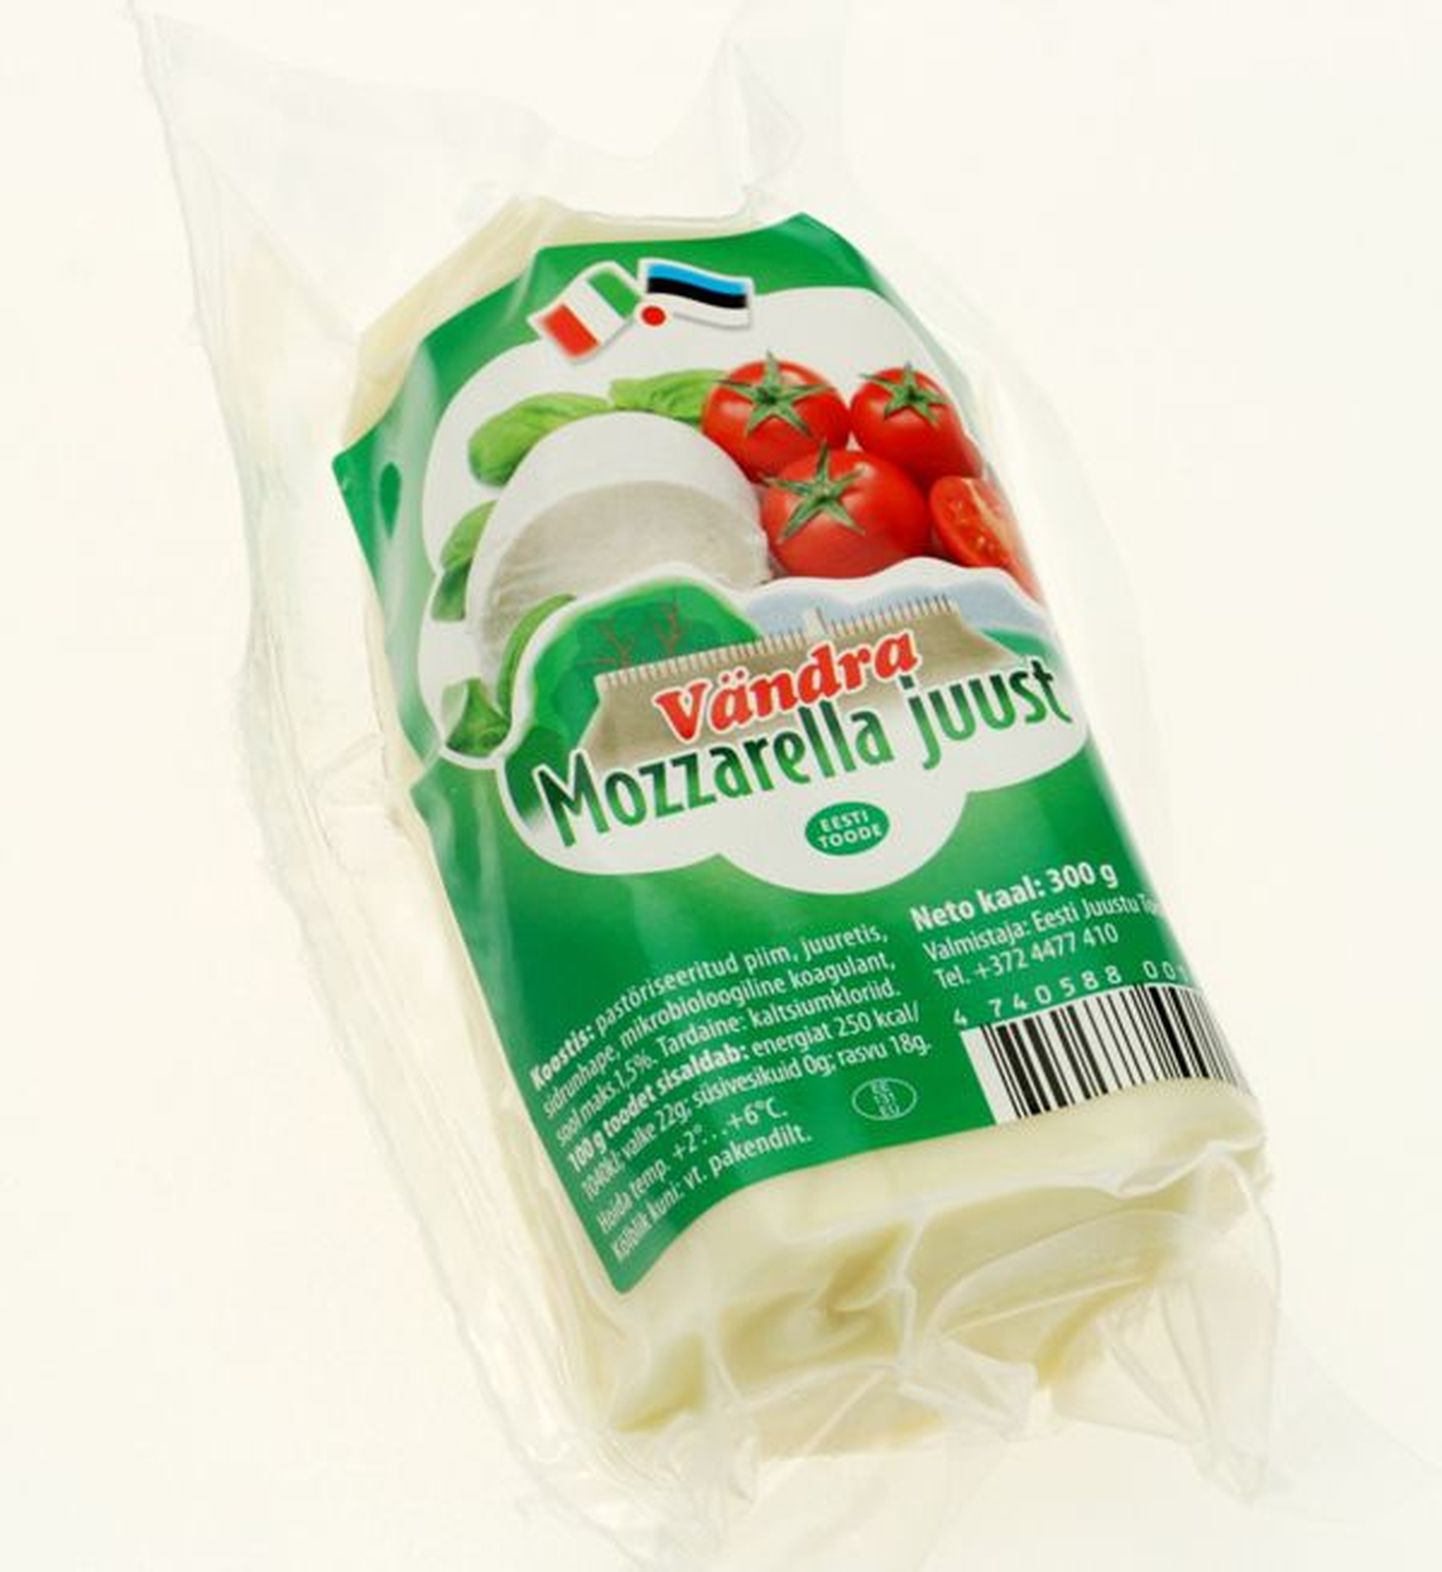 Mozzarella juustud Estoverilt.